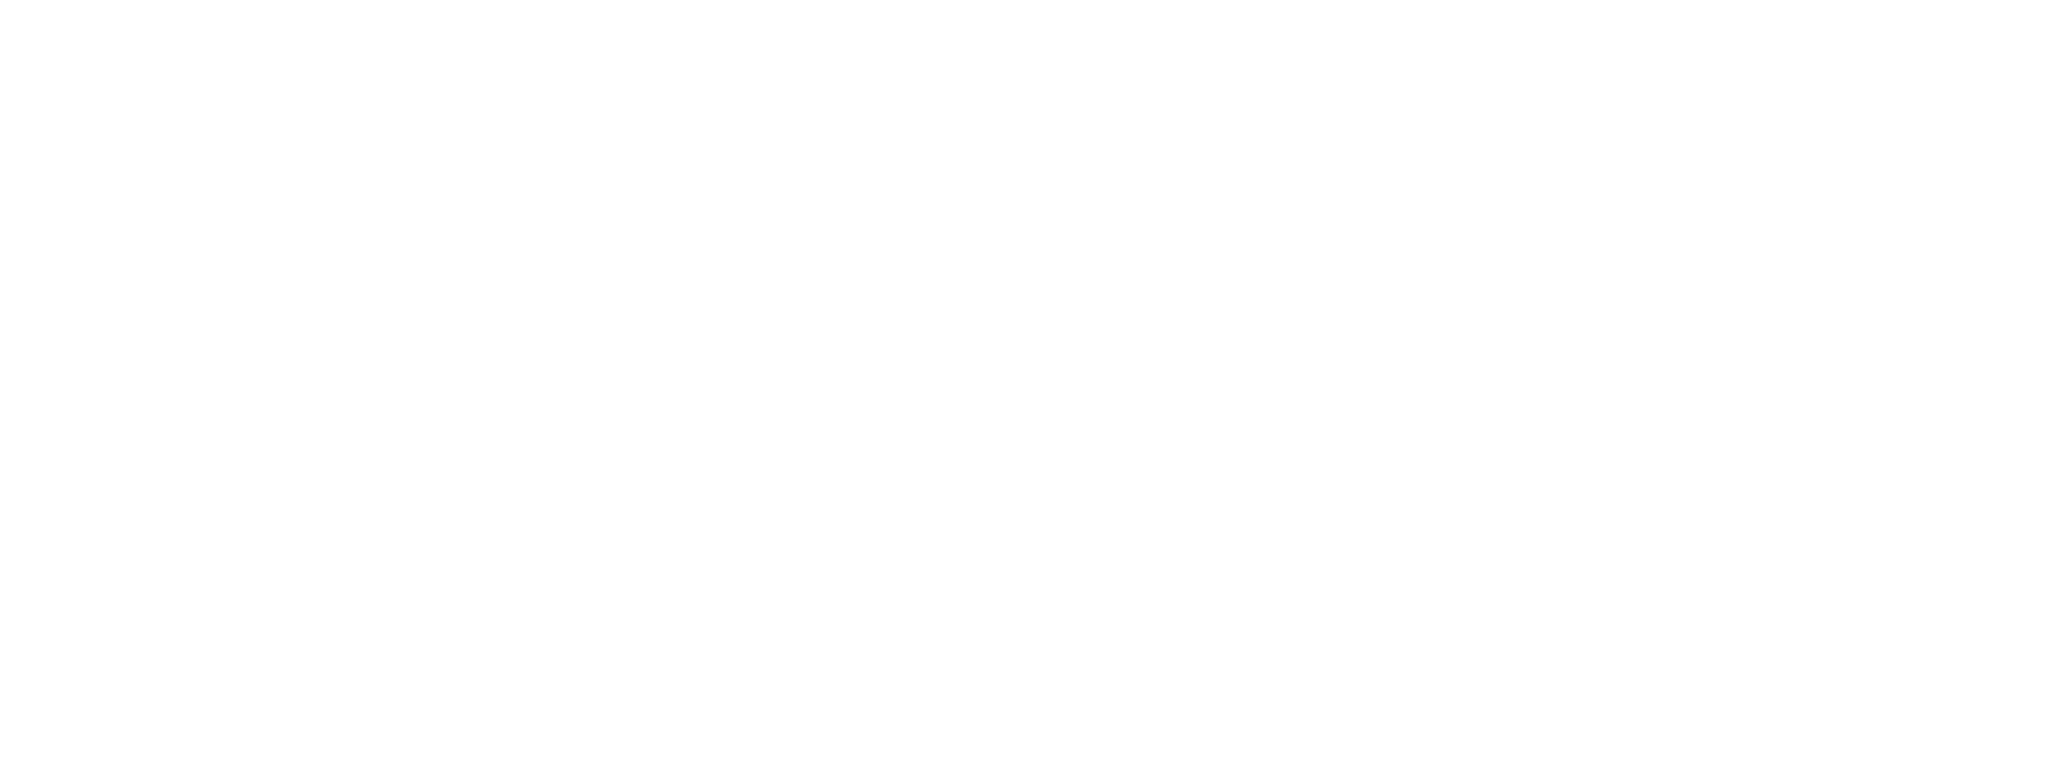 Kitchen-Respray